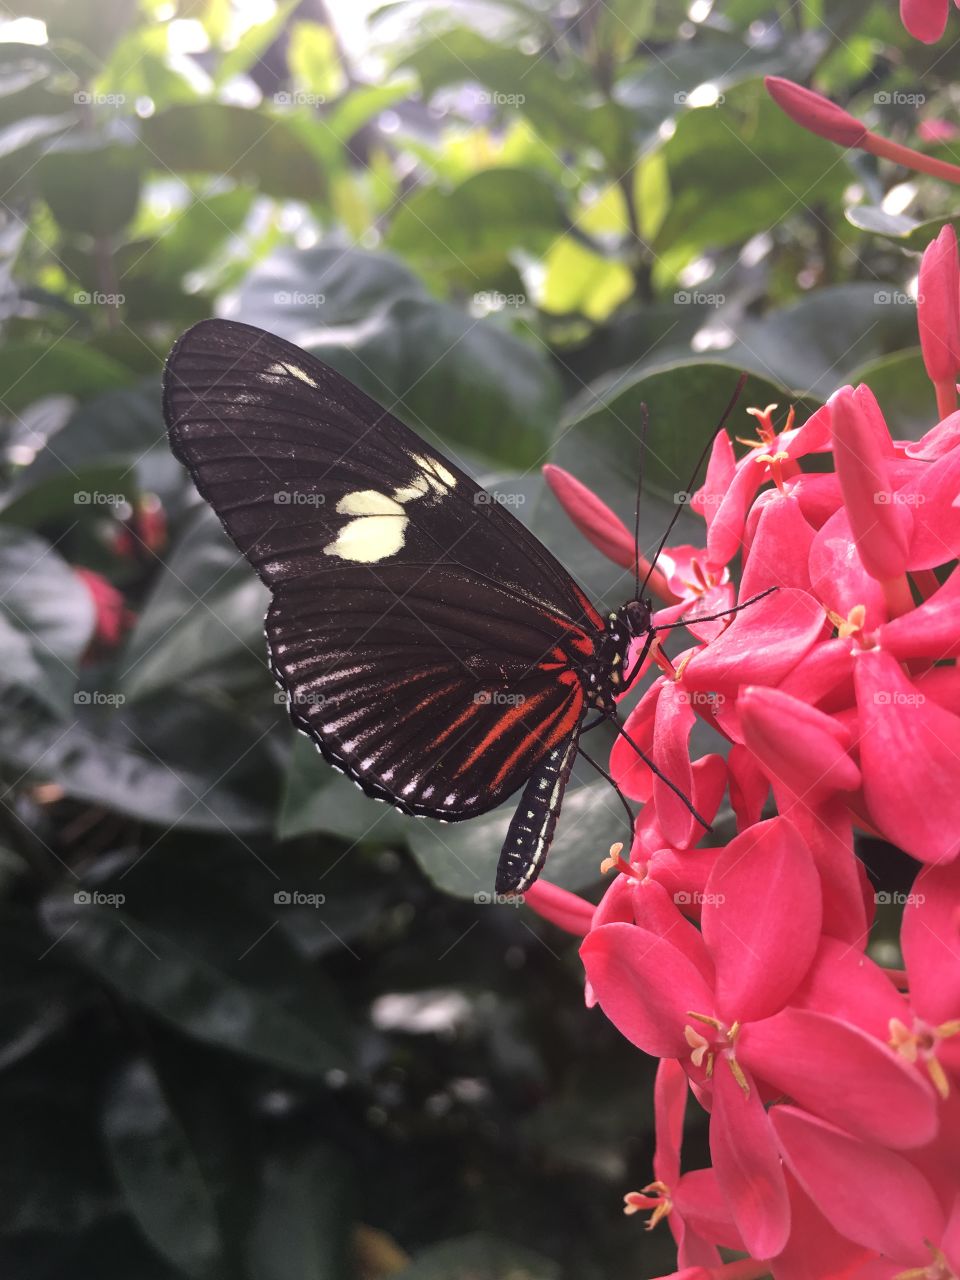 Butterfly